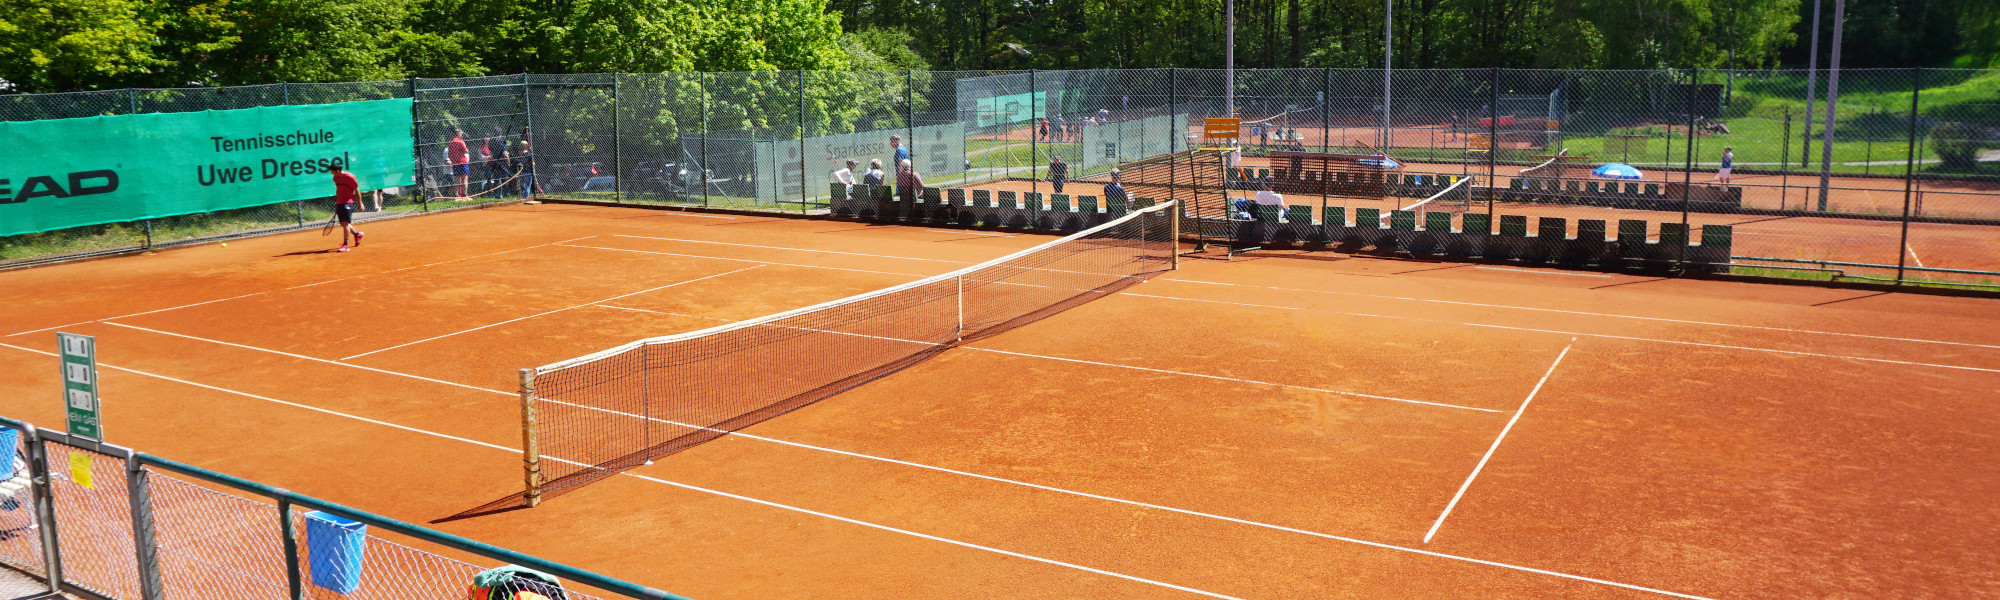 tennisplatz buchen online